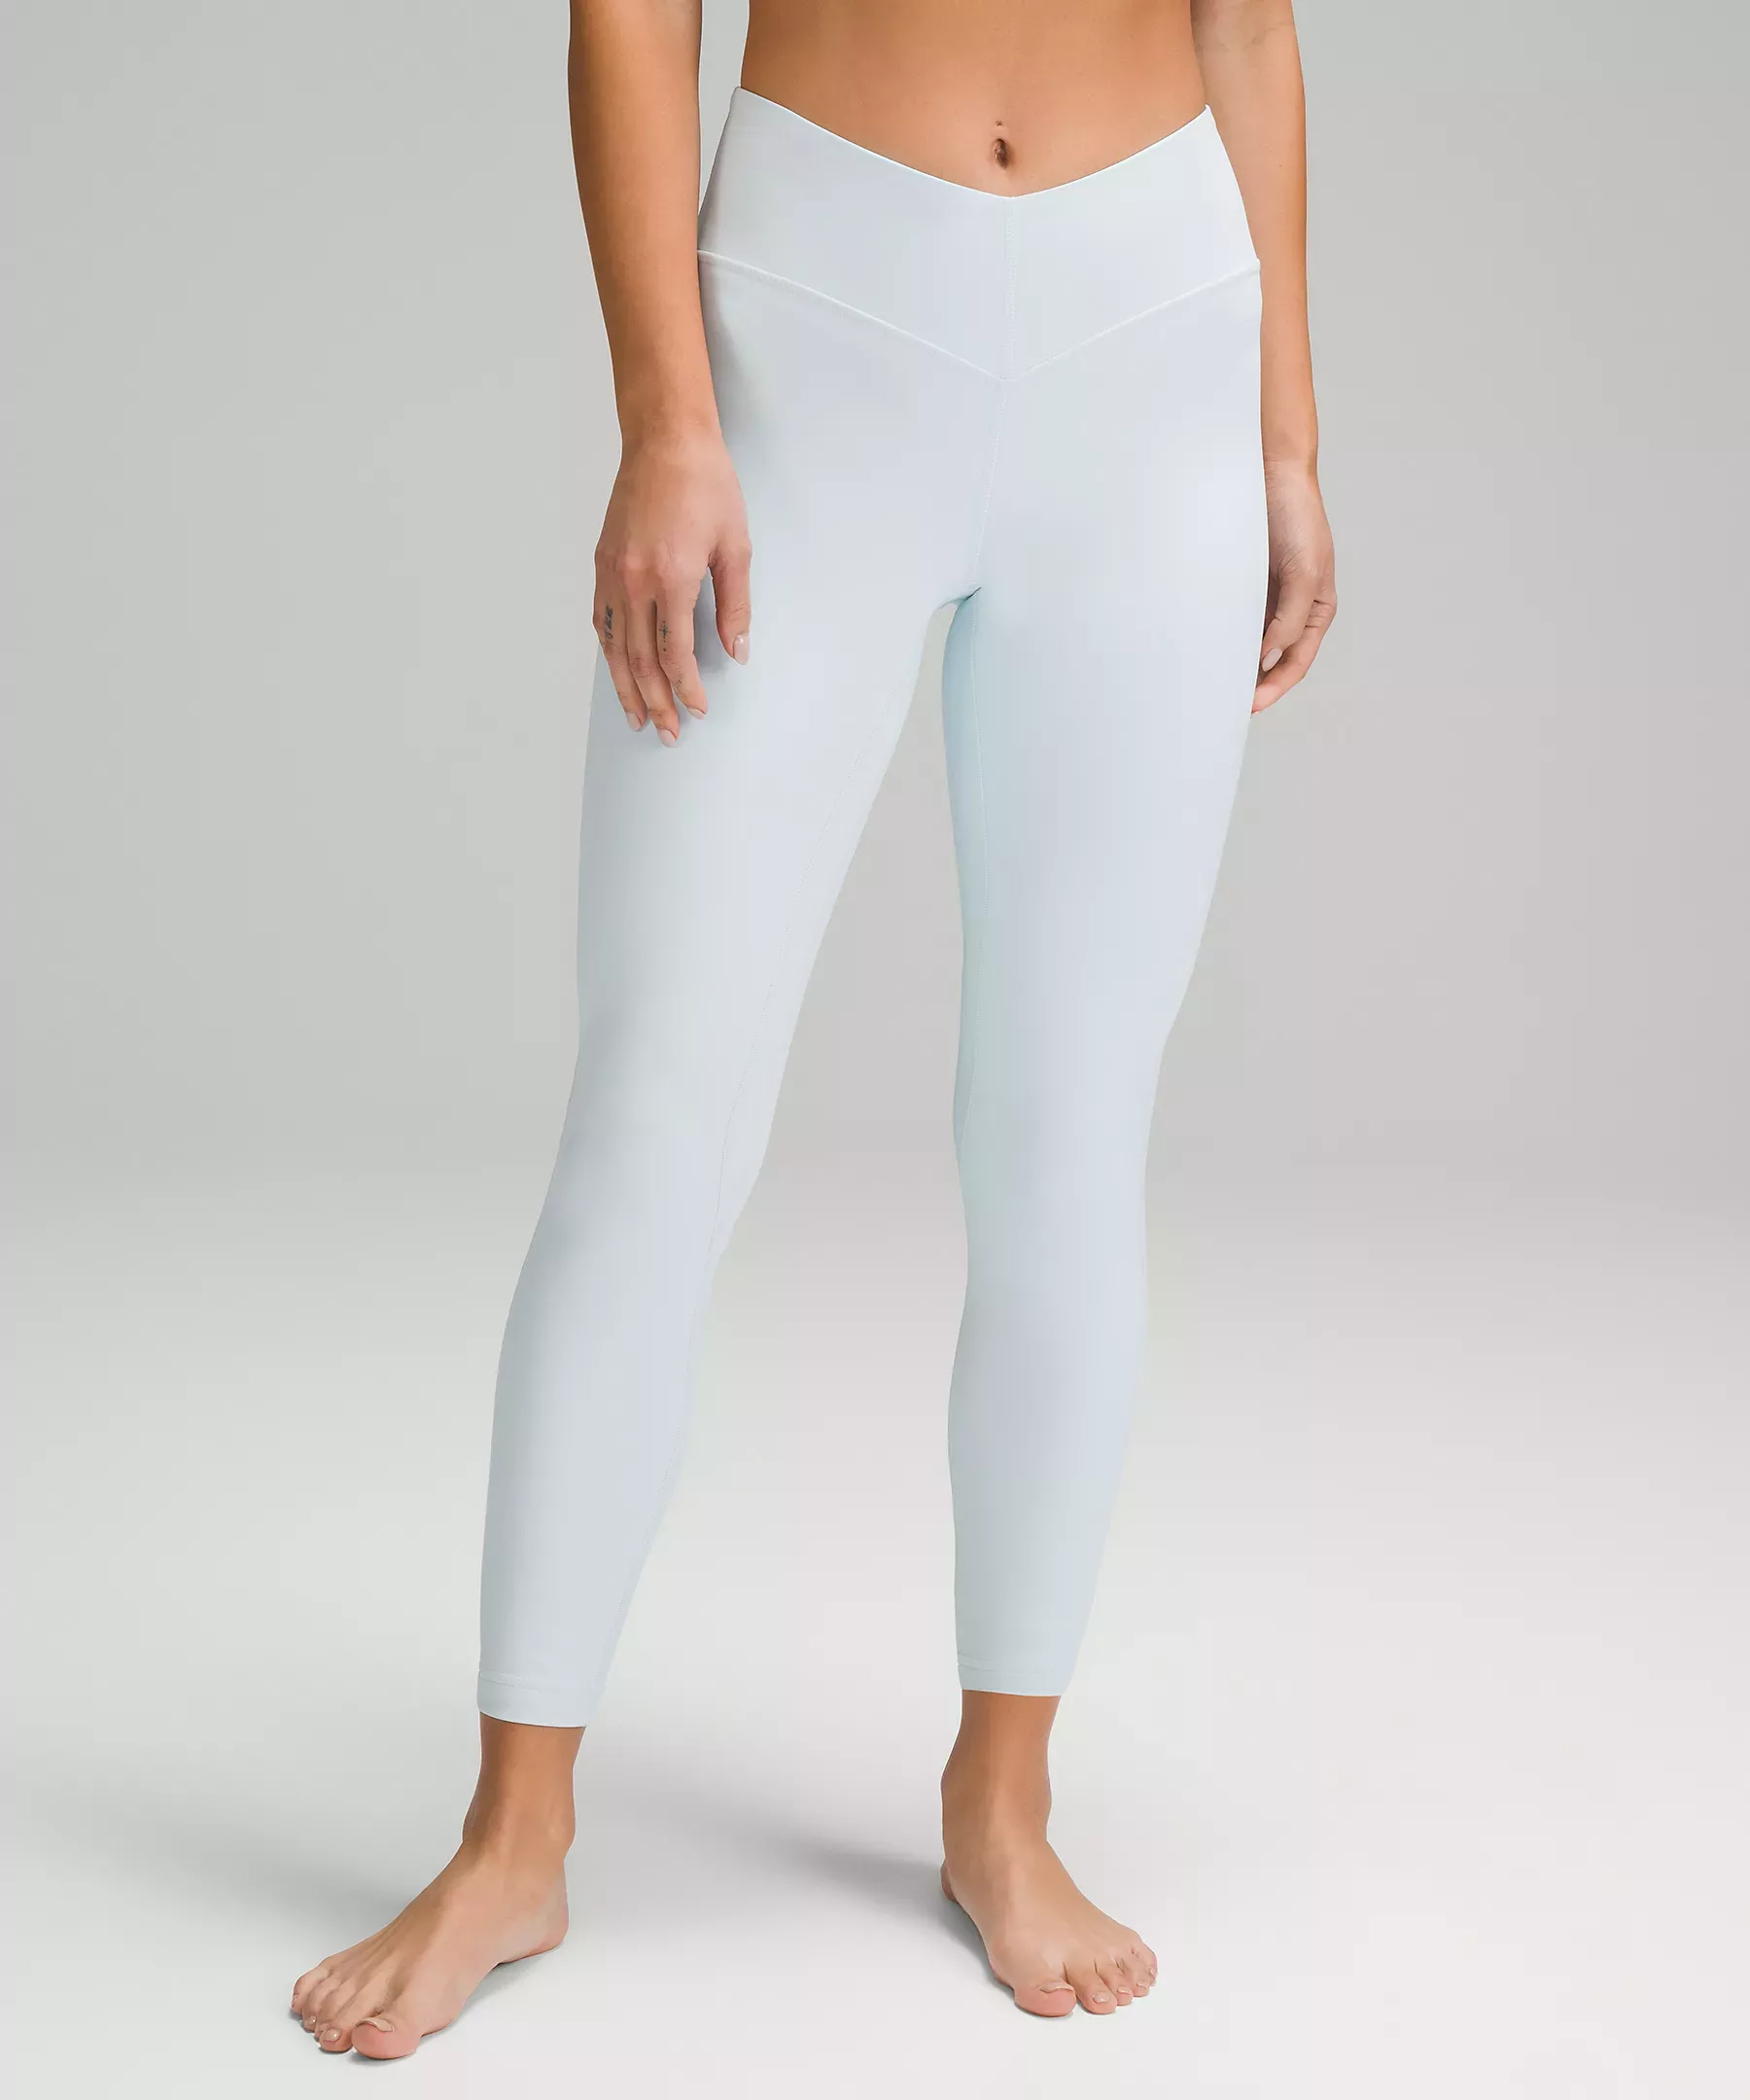 Lululemon Align™ V-Waist Pant 25 *Online Only, Women's Pants